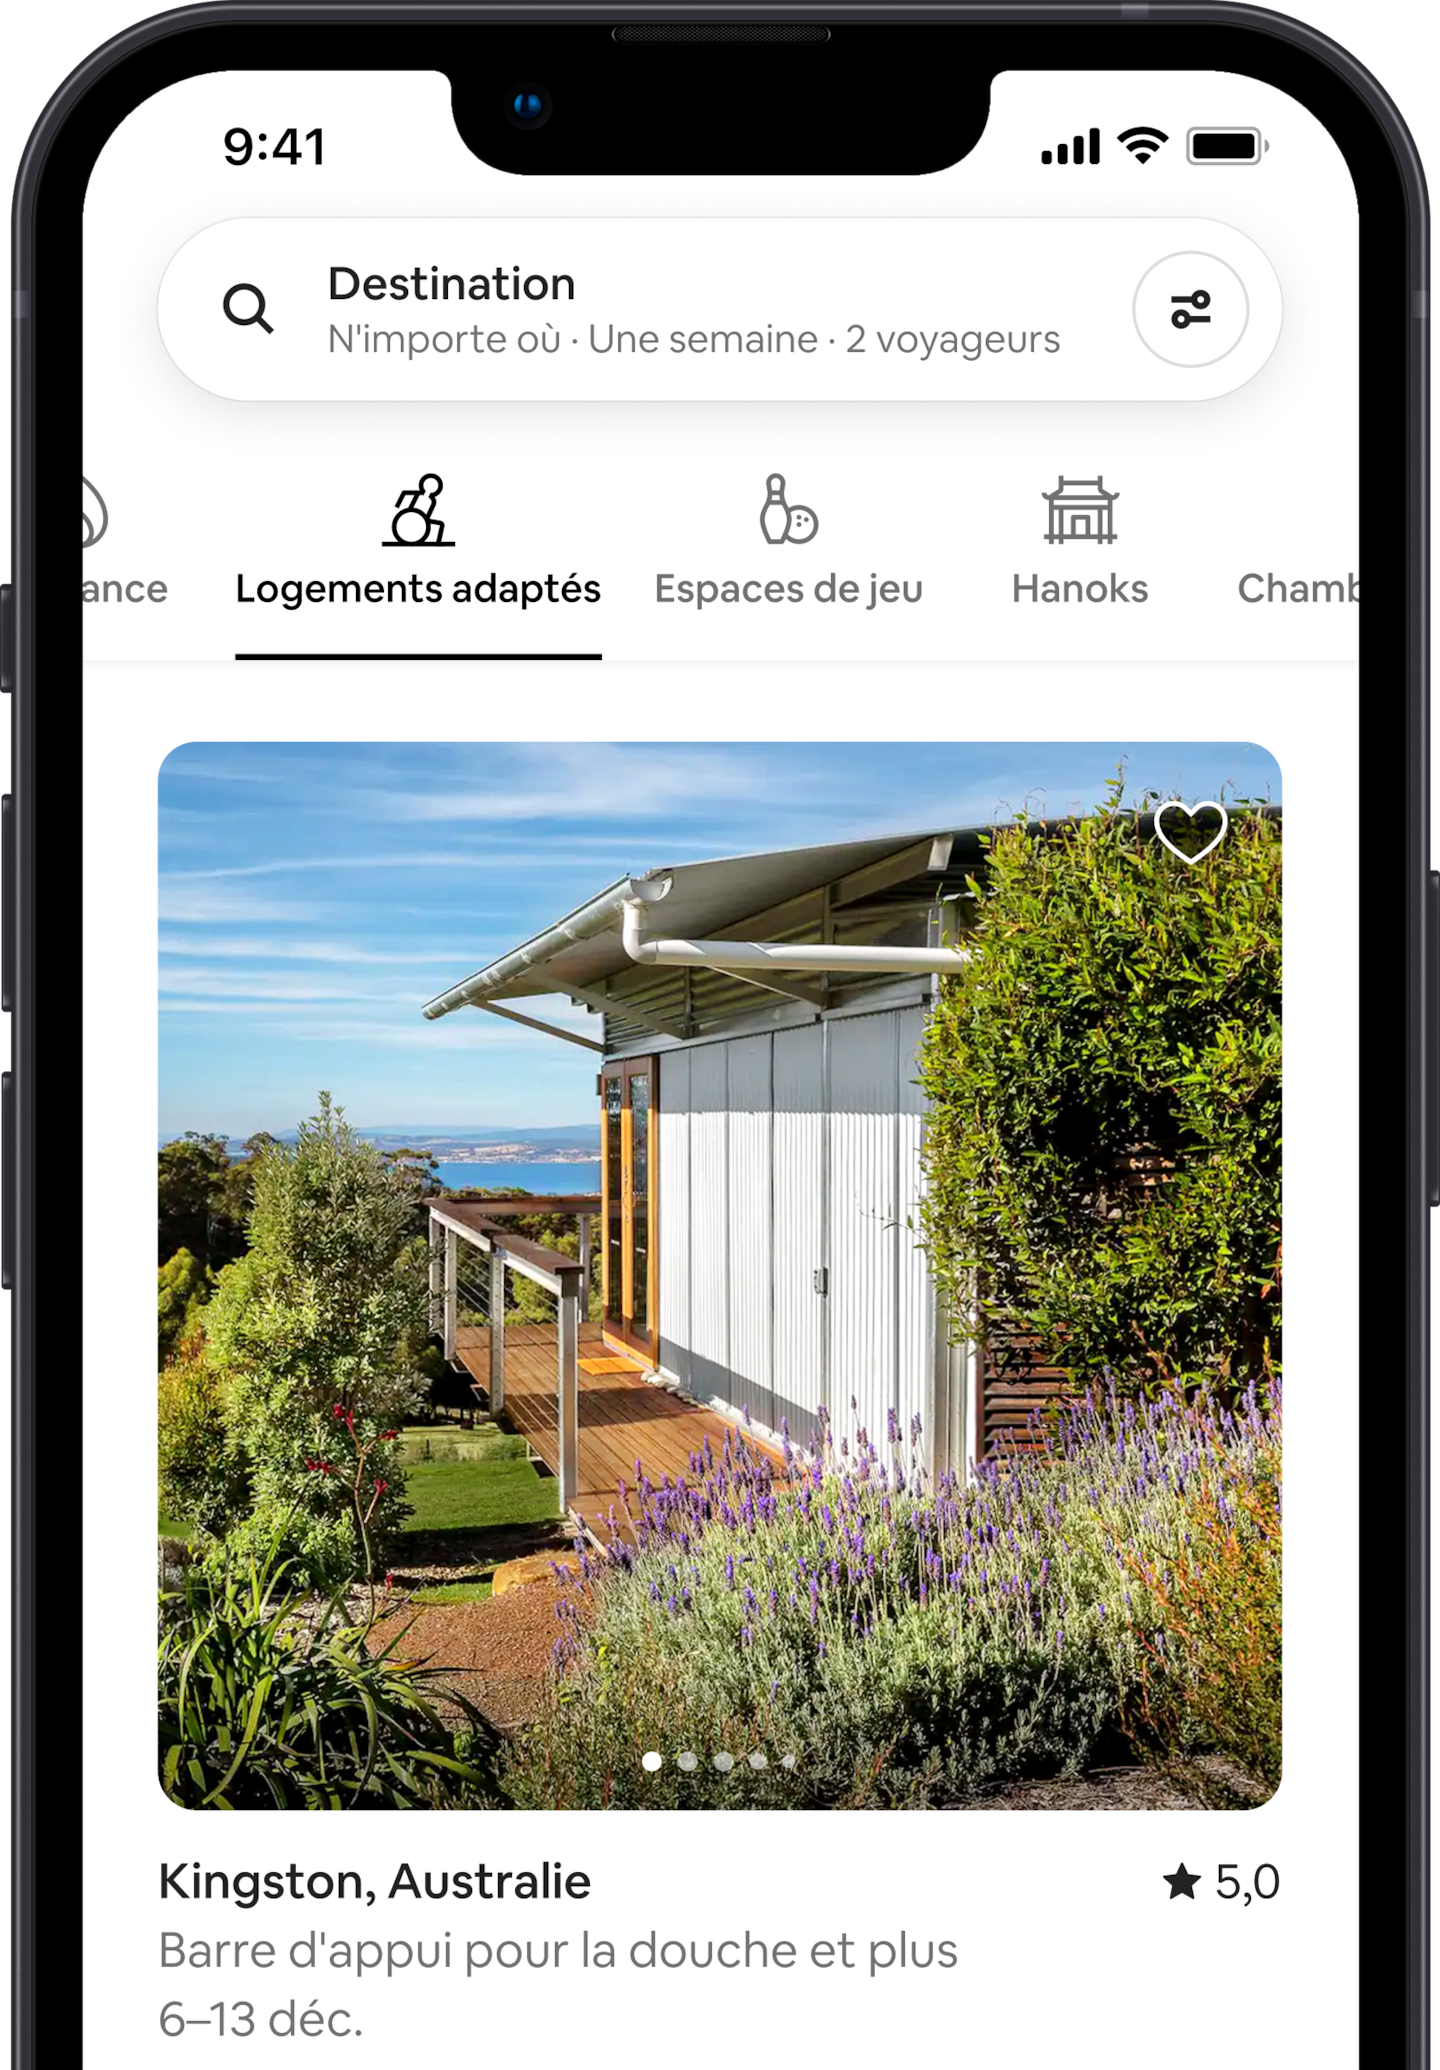 Un téléphone affichant des logements de la catégorie Airbnb Logements adaptés, avec une maison dotée d'une entrée de plain-pied.